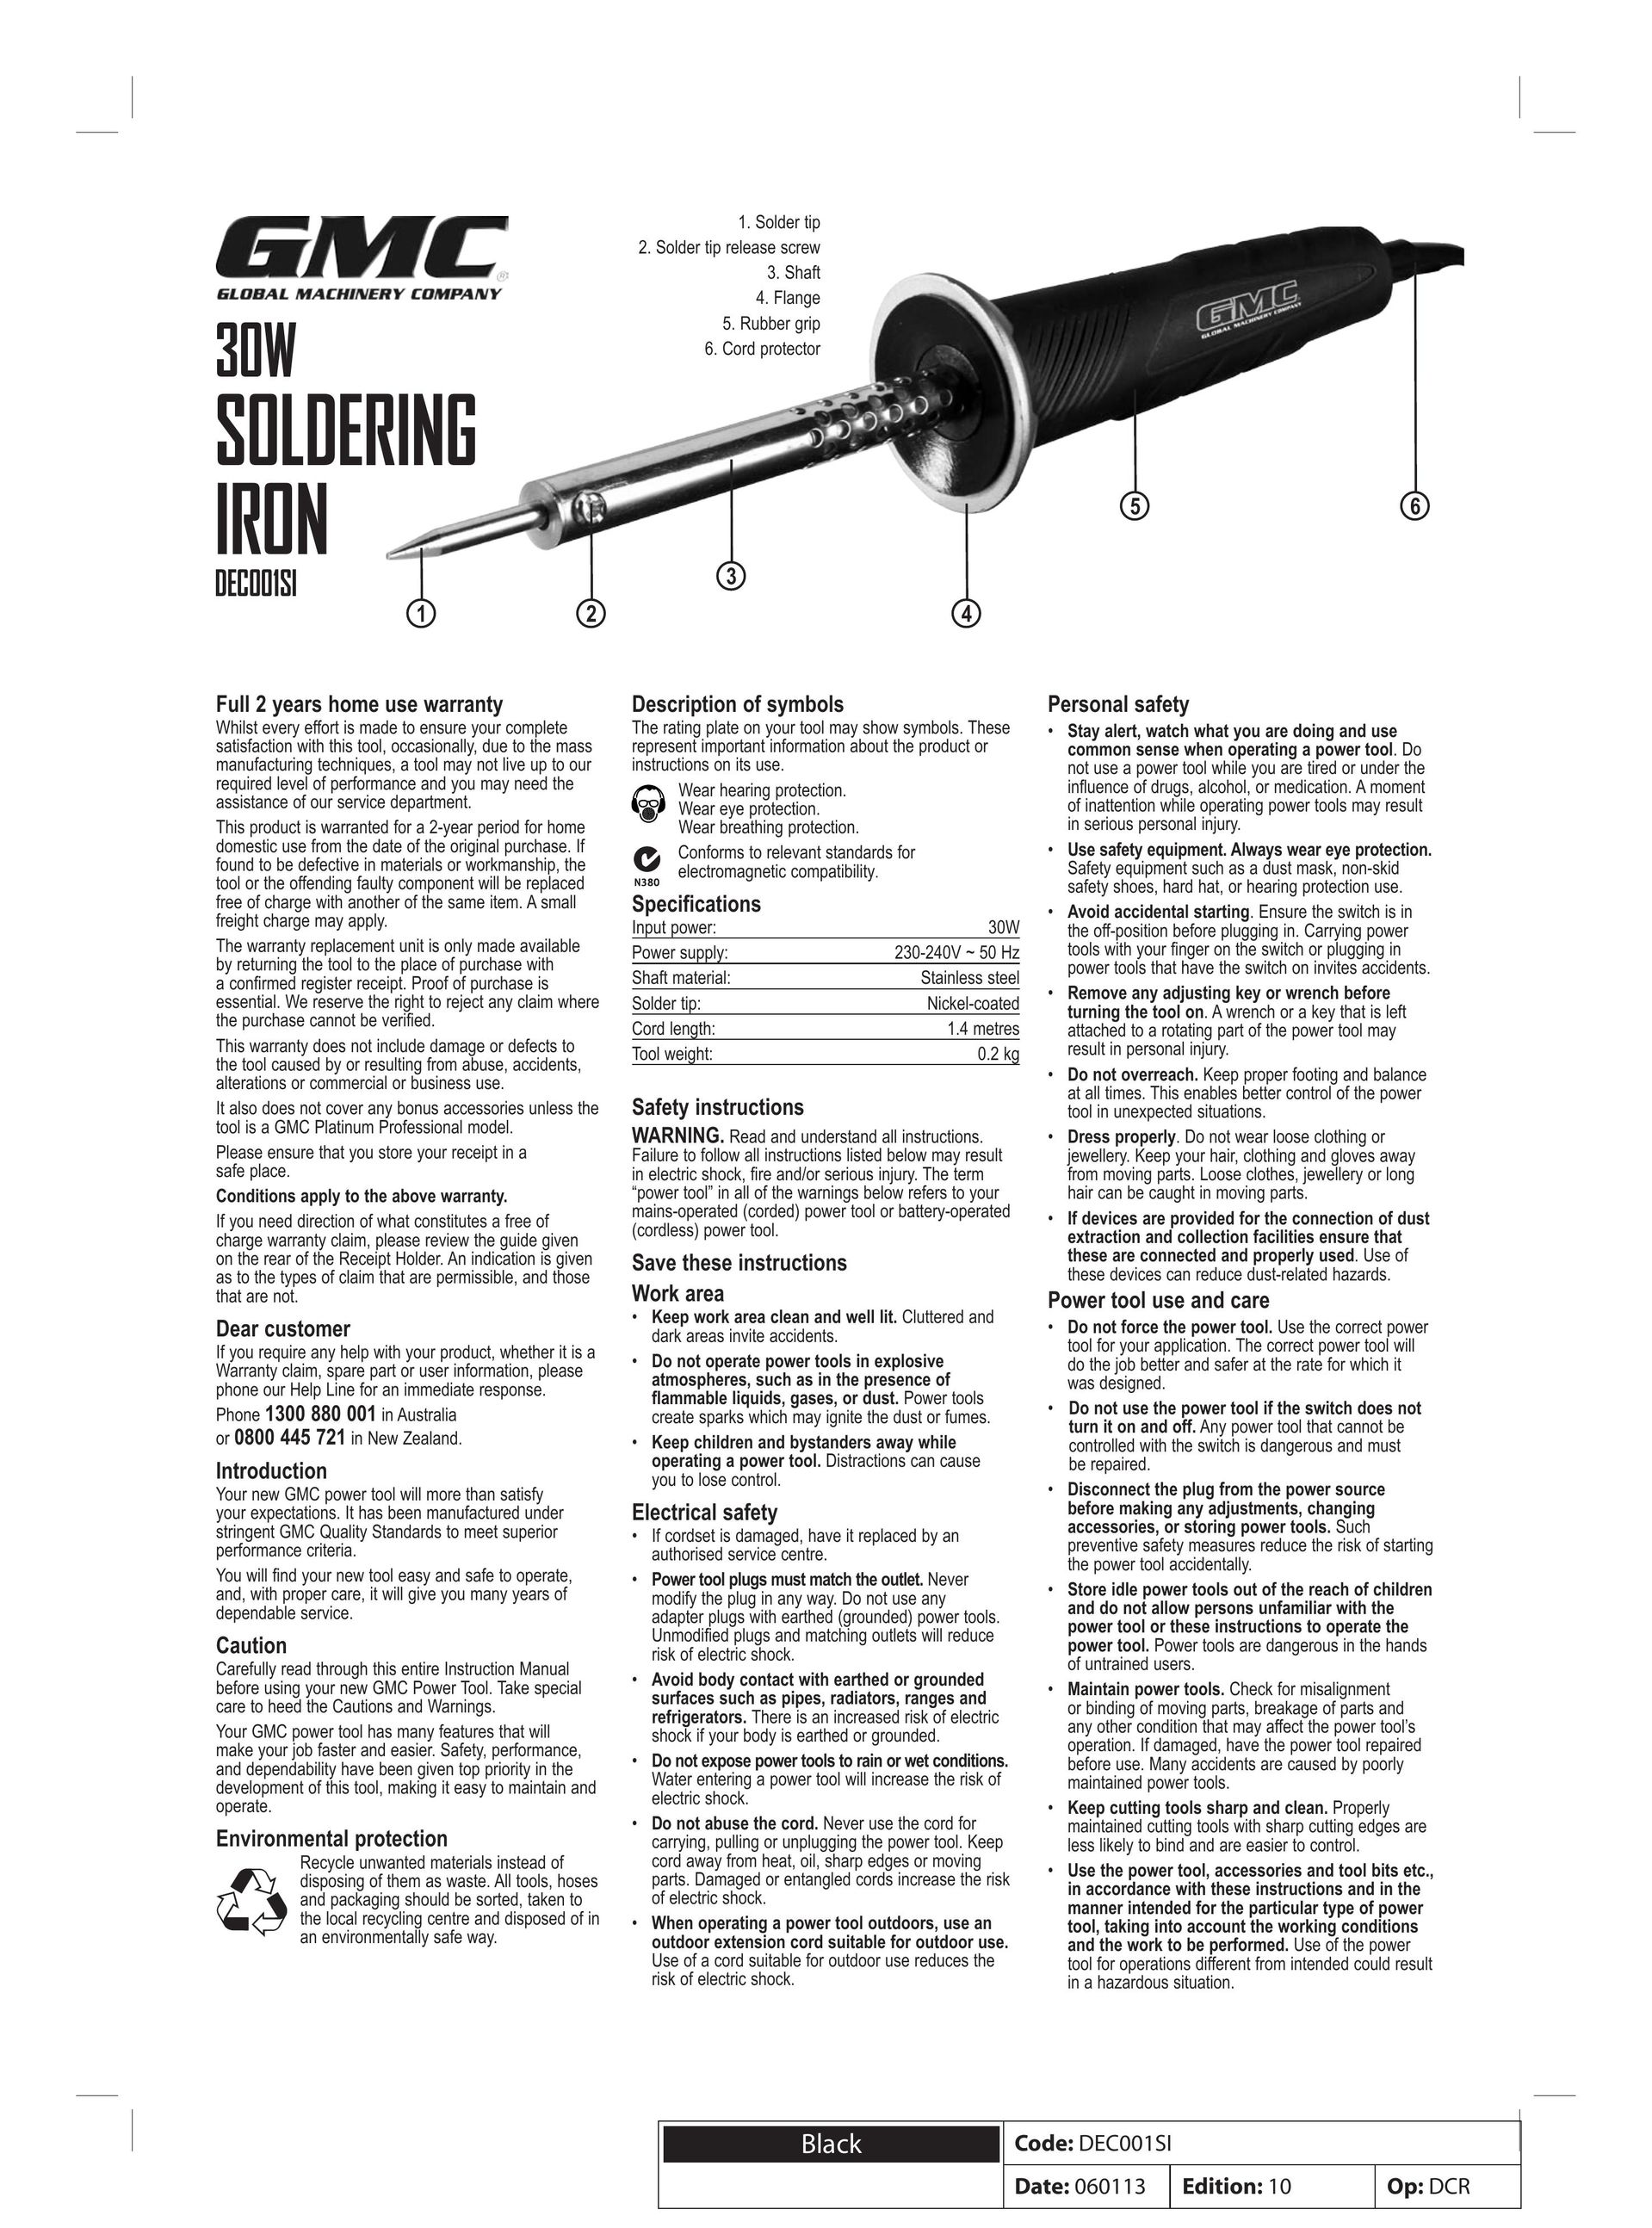 Global Machinery Company DEC001SI Soldering Gun User Manual